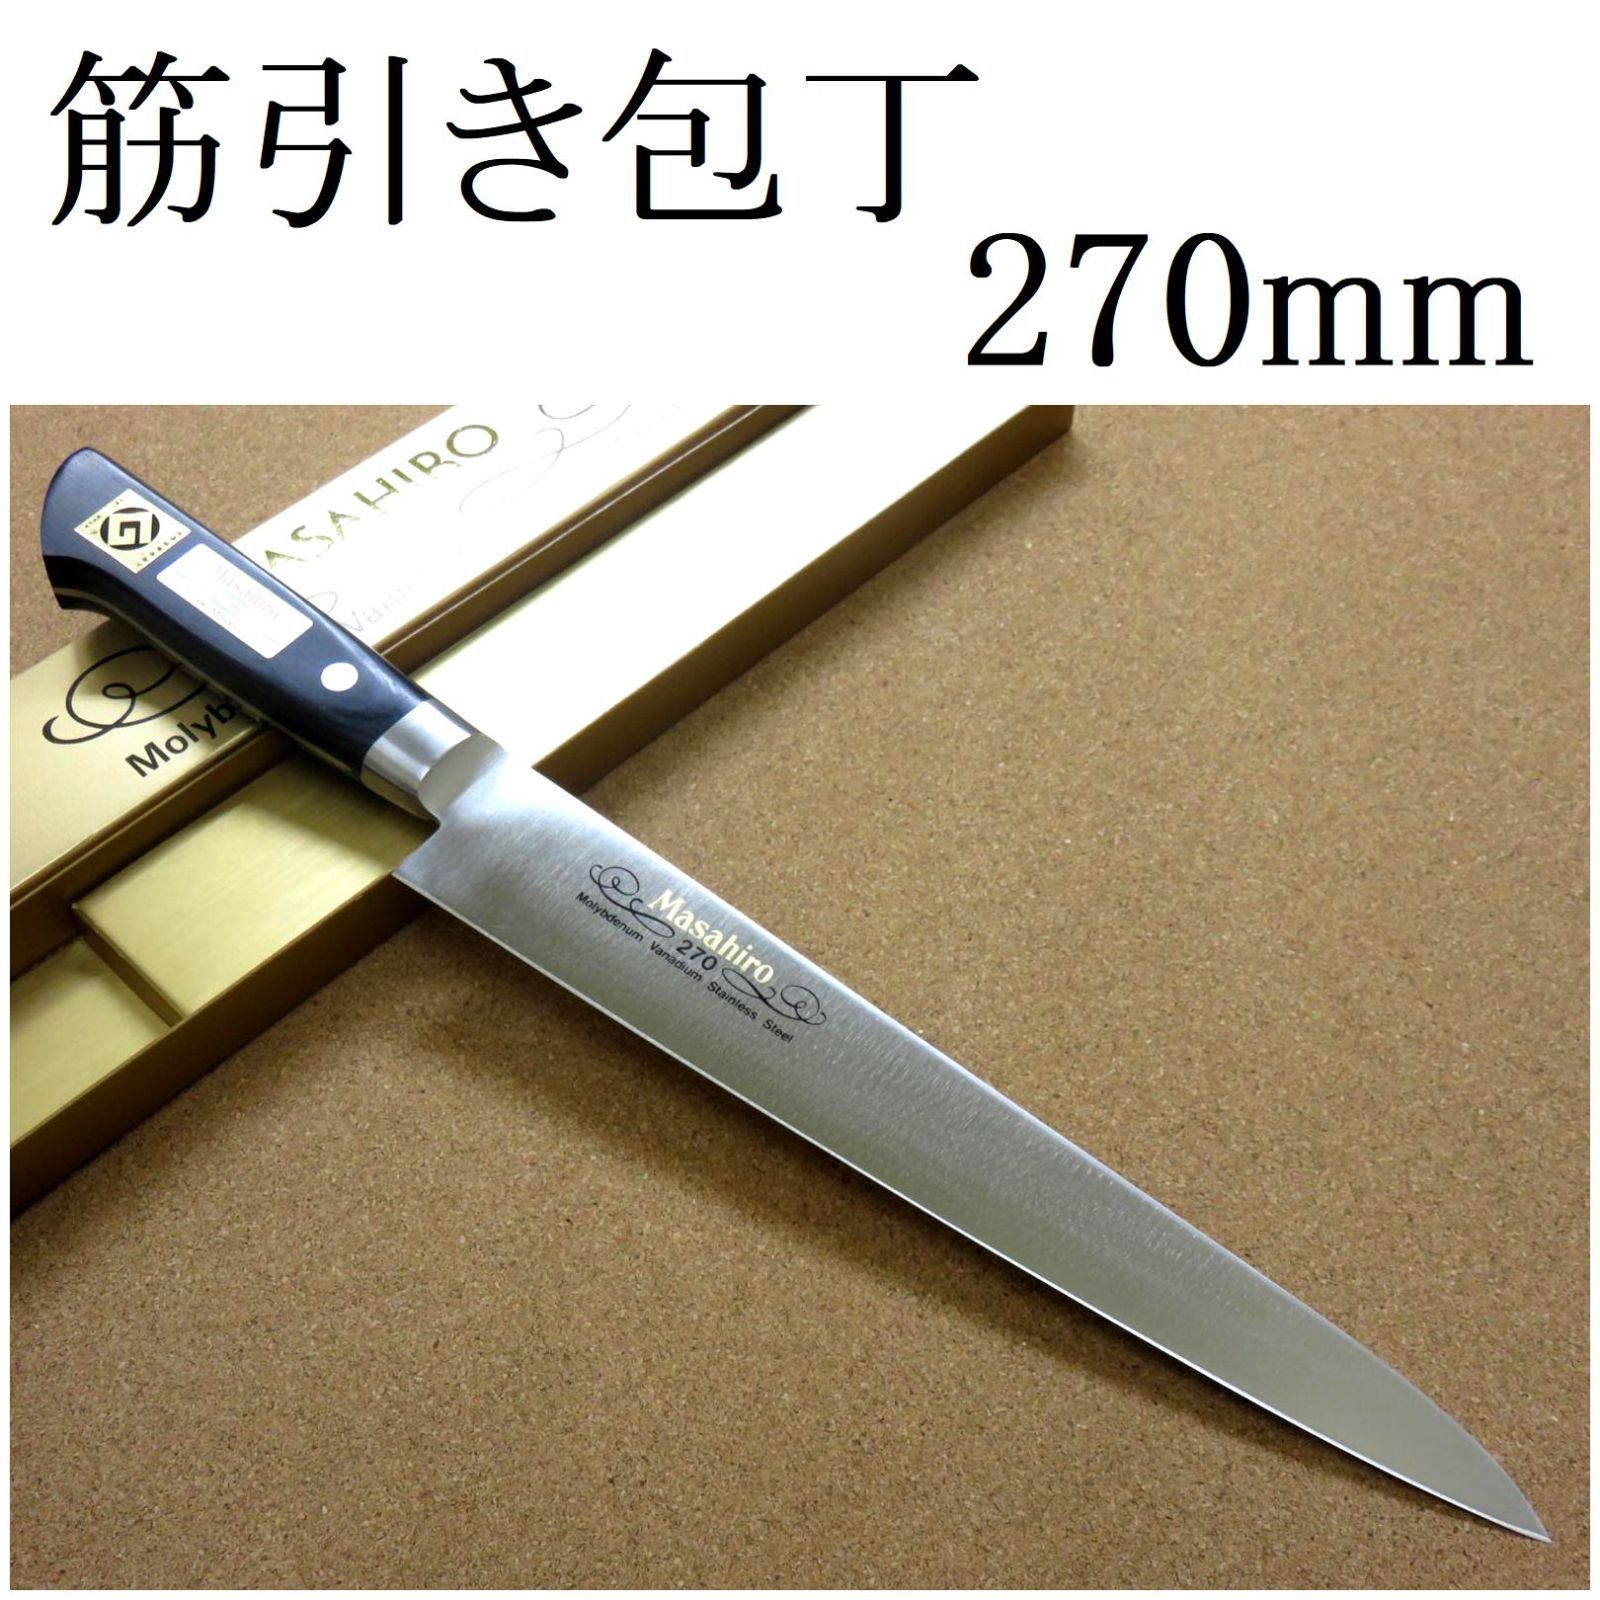 関の刃物 筋引包丁 270mm 正広 MV鋼 口金 刺身包丁 スライシングナイフ-